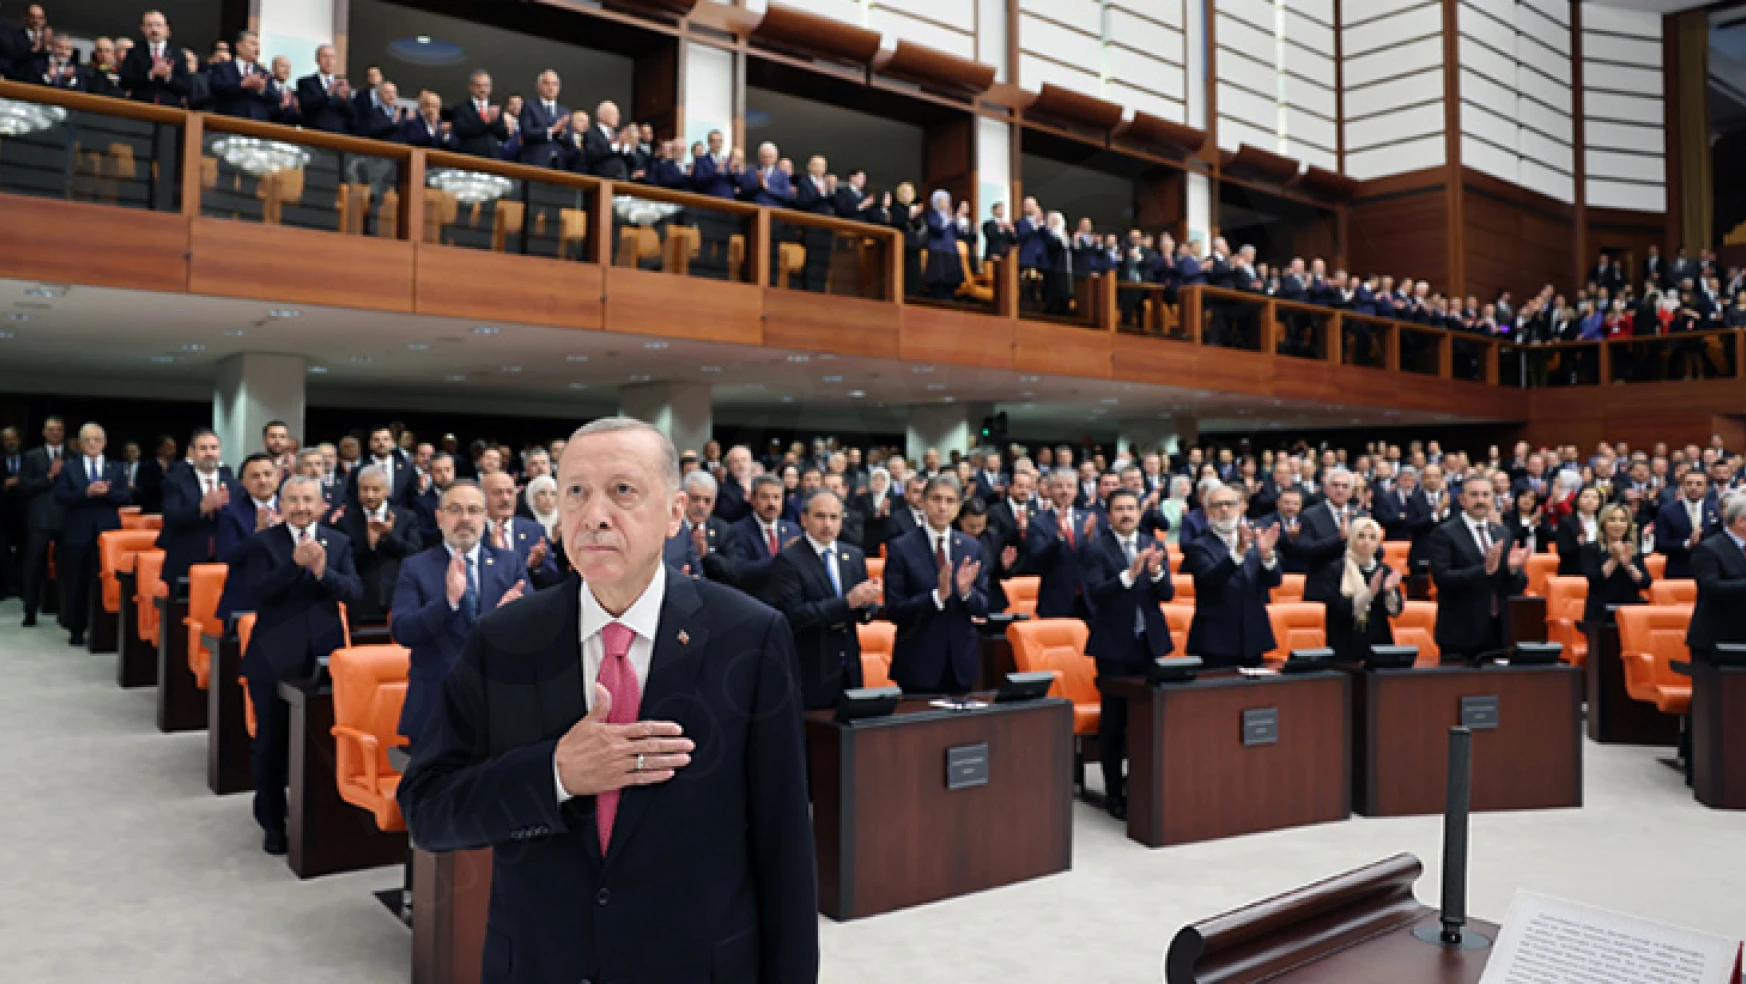 Cumhurbaşkanı Erdoğan, TBMM Genel Kurulu'nda yemin ederek göreve başladı